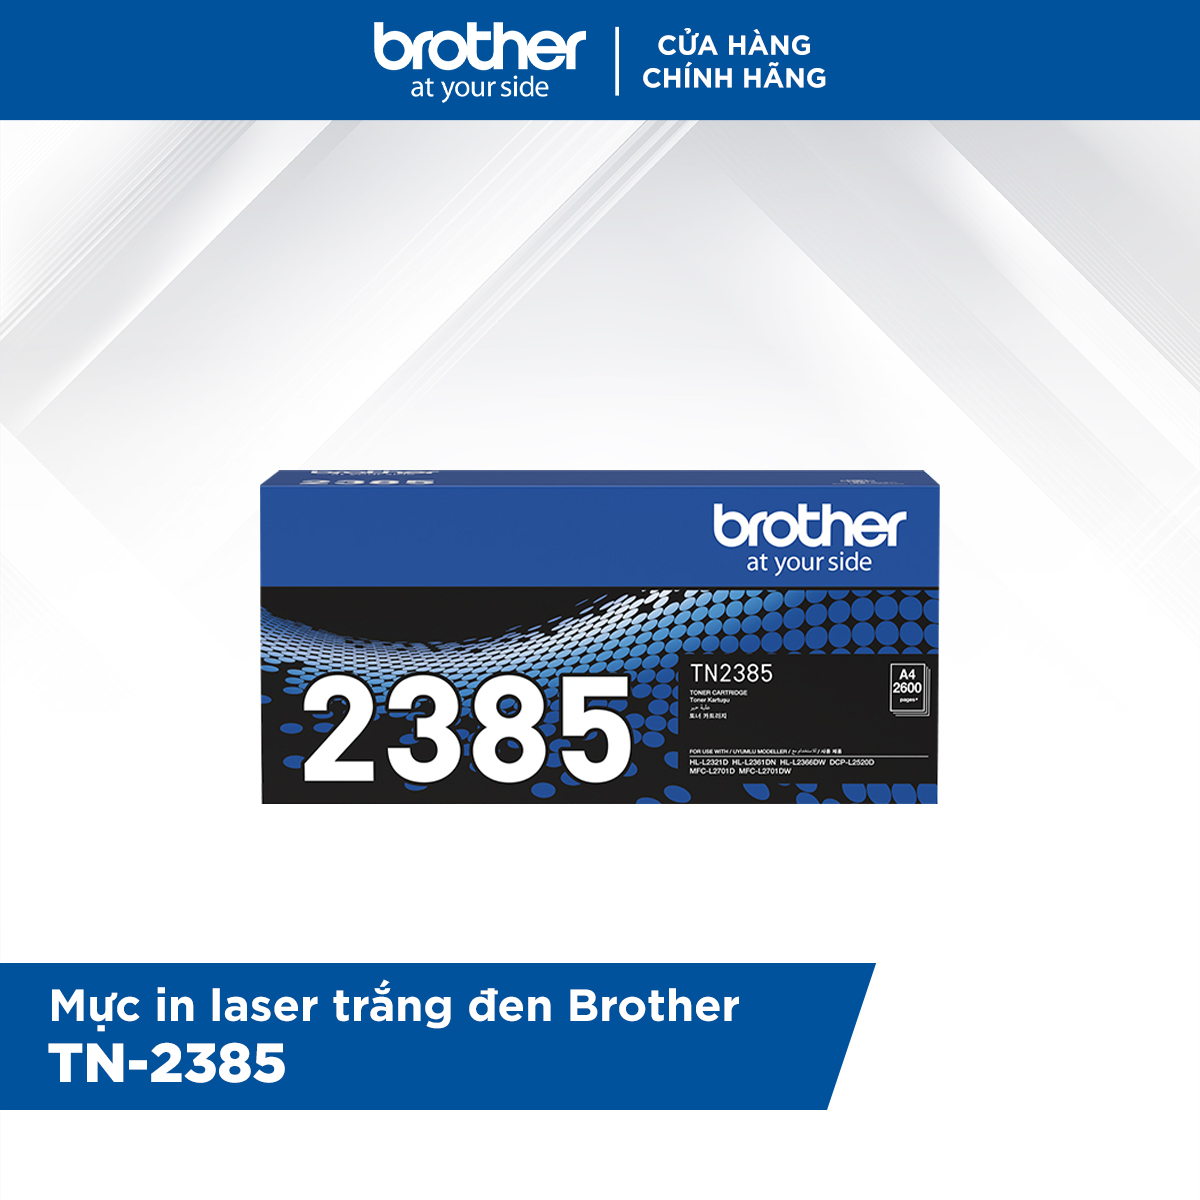 [Hàng chính hãng] Combo Máy in laser đơn sắc Brother HL-L2321D và Mực in laser trắng đen Brother TN-2385